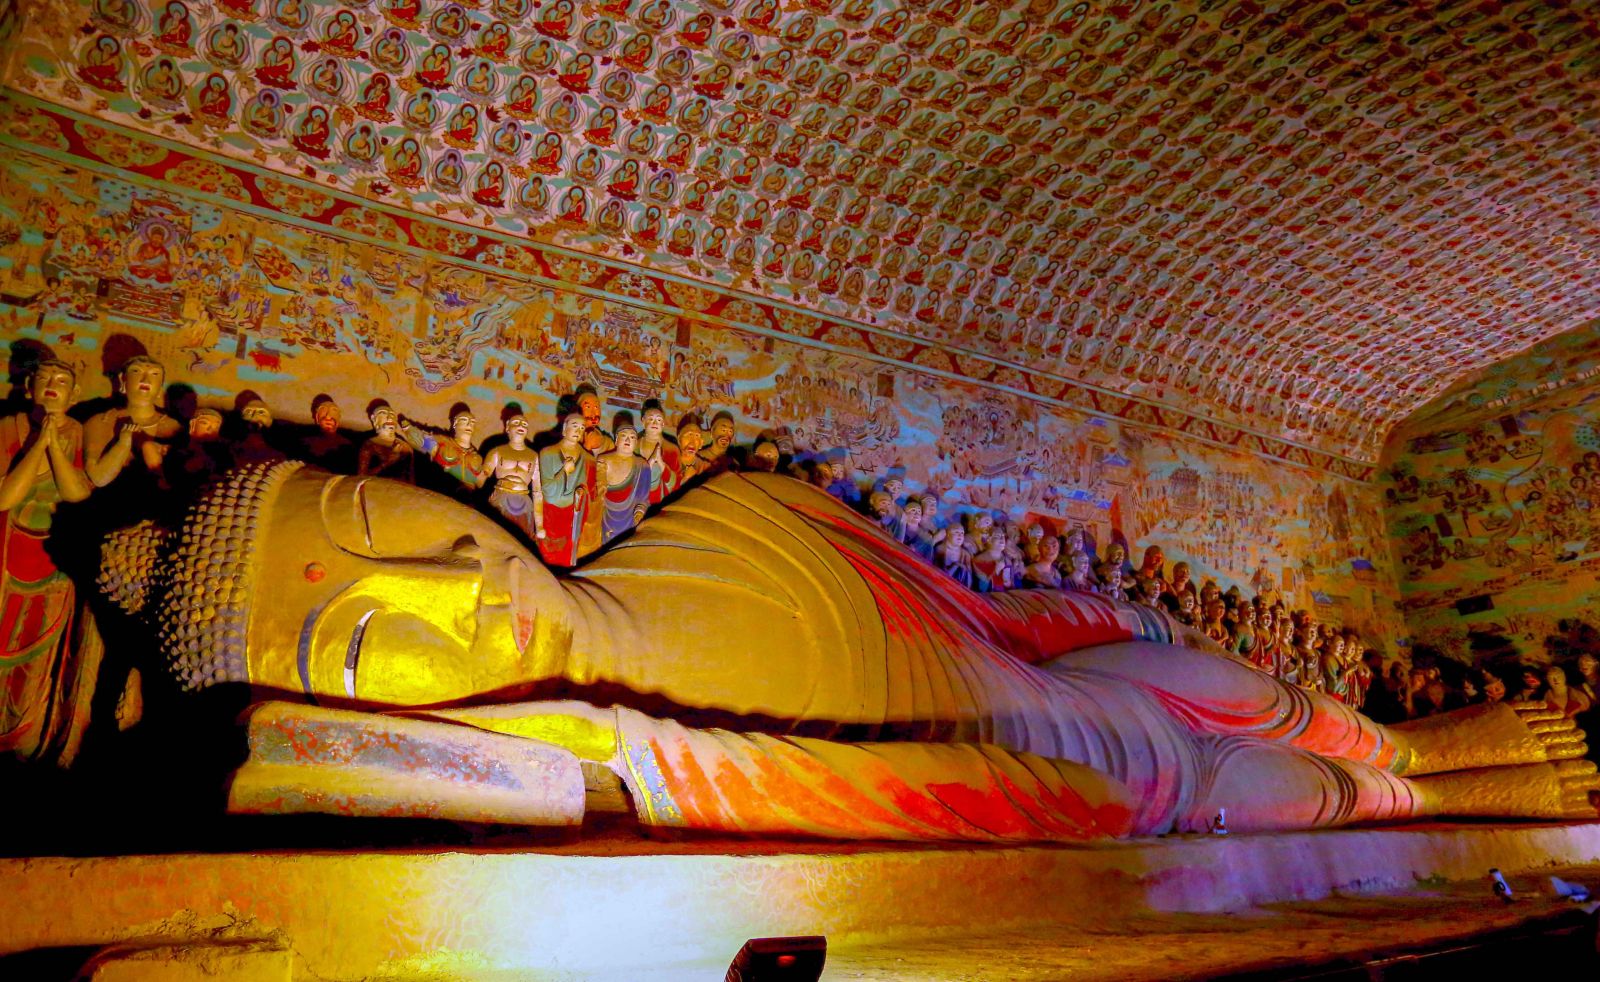 Pho tượng nổi tiếng “Phật nhập Niết Bàn” từ thời nhà Đường (khoảng thế kỷ VIII - IX) cao hơn 15m được tạc nằm nghiêng về một bên, yên tĩnh nhập Niết bàn. 